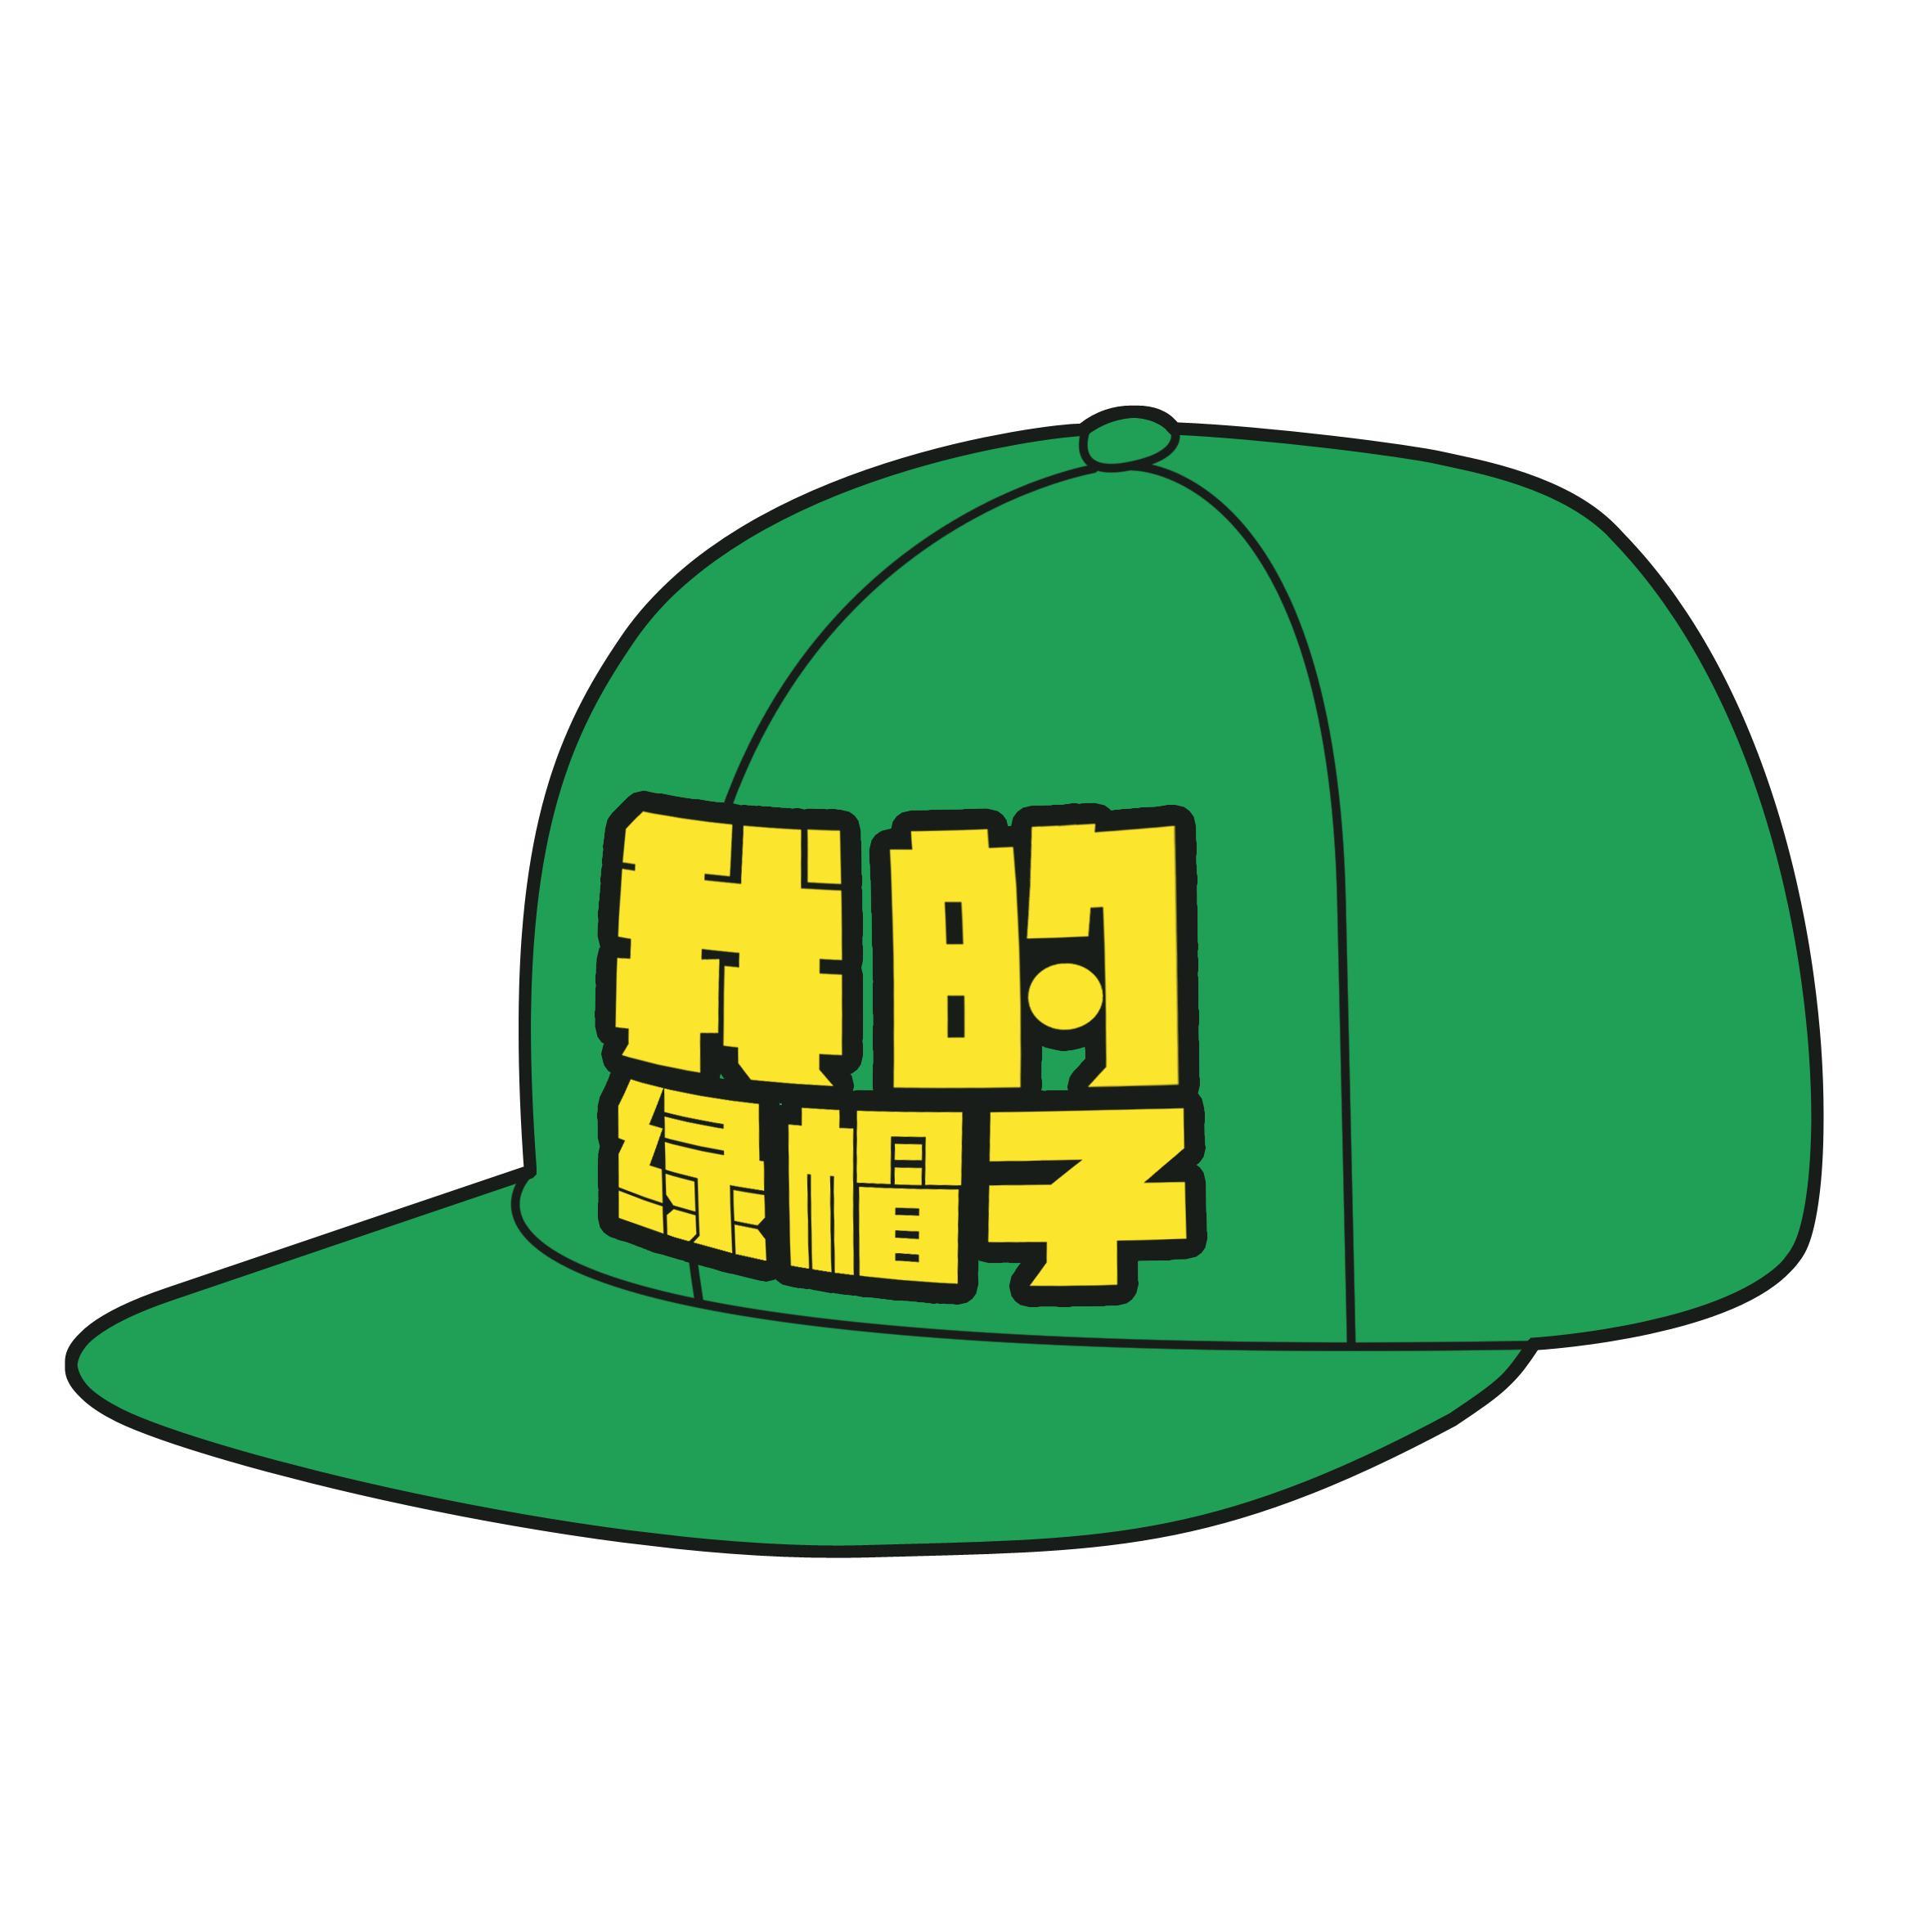 绿色帽子图片_绿色帽子_微信公众号文章